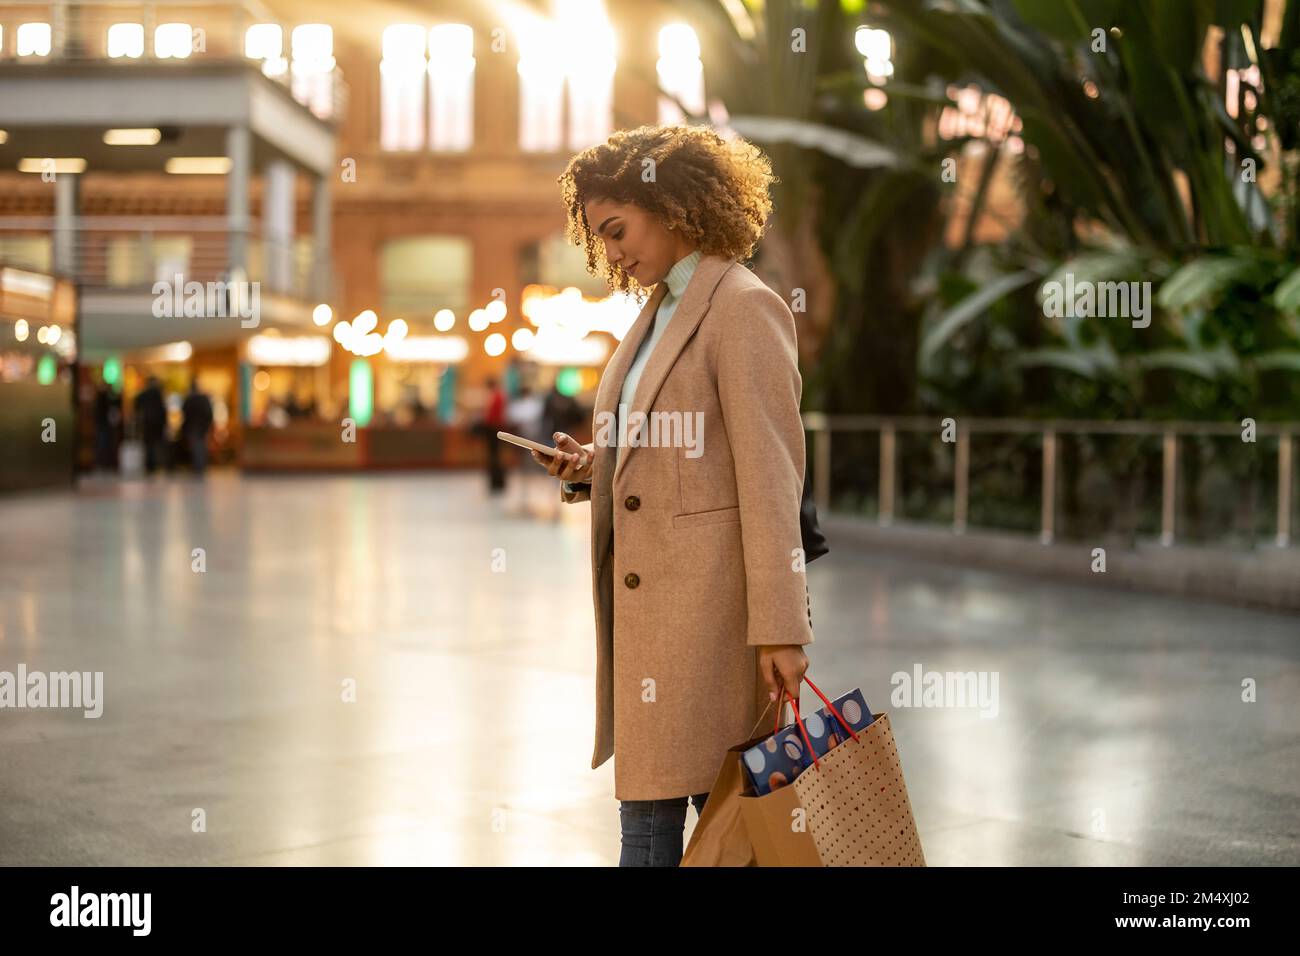 Mujer joven que sostiene los de compras usando teléfono móvil Fotografía stock Alamy